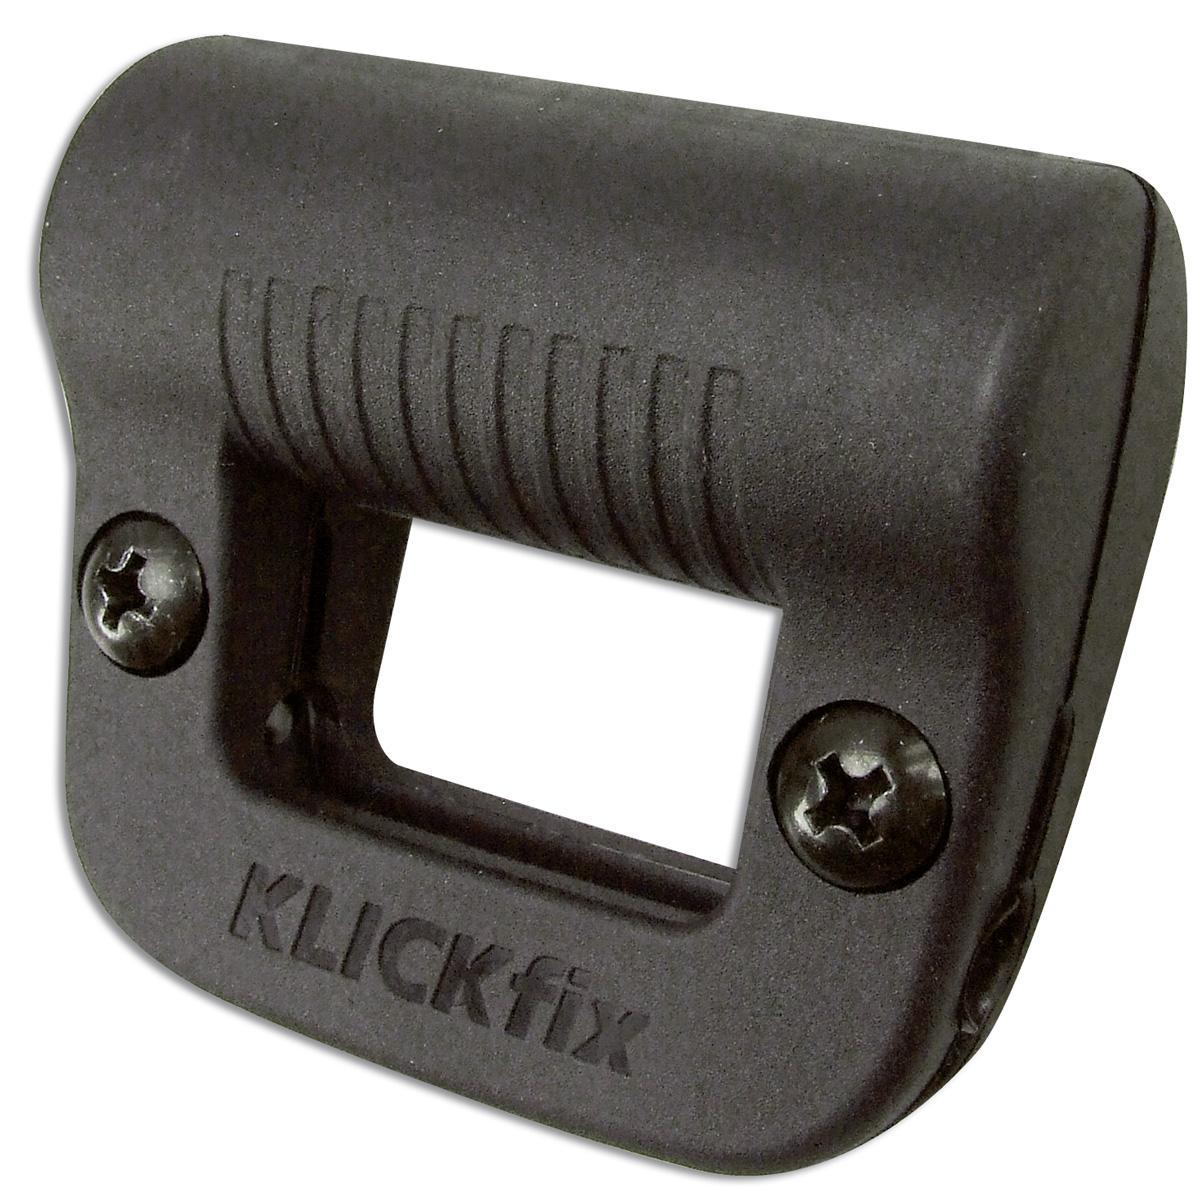 KLICKfix Lightclip